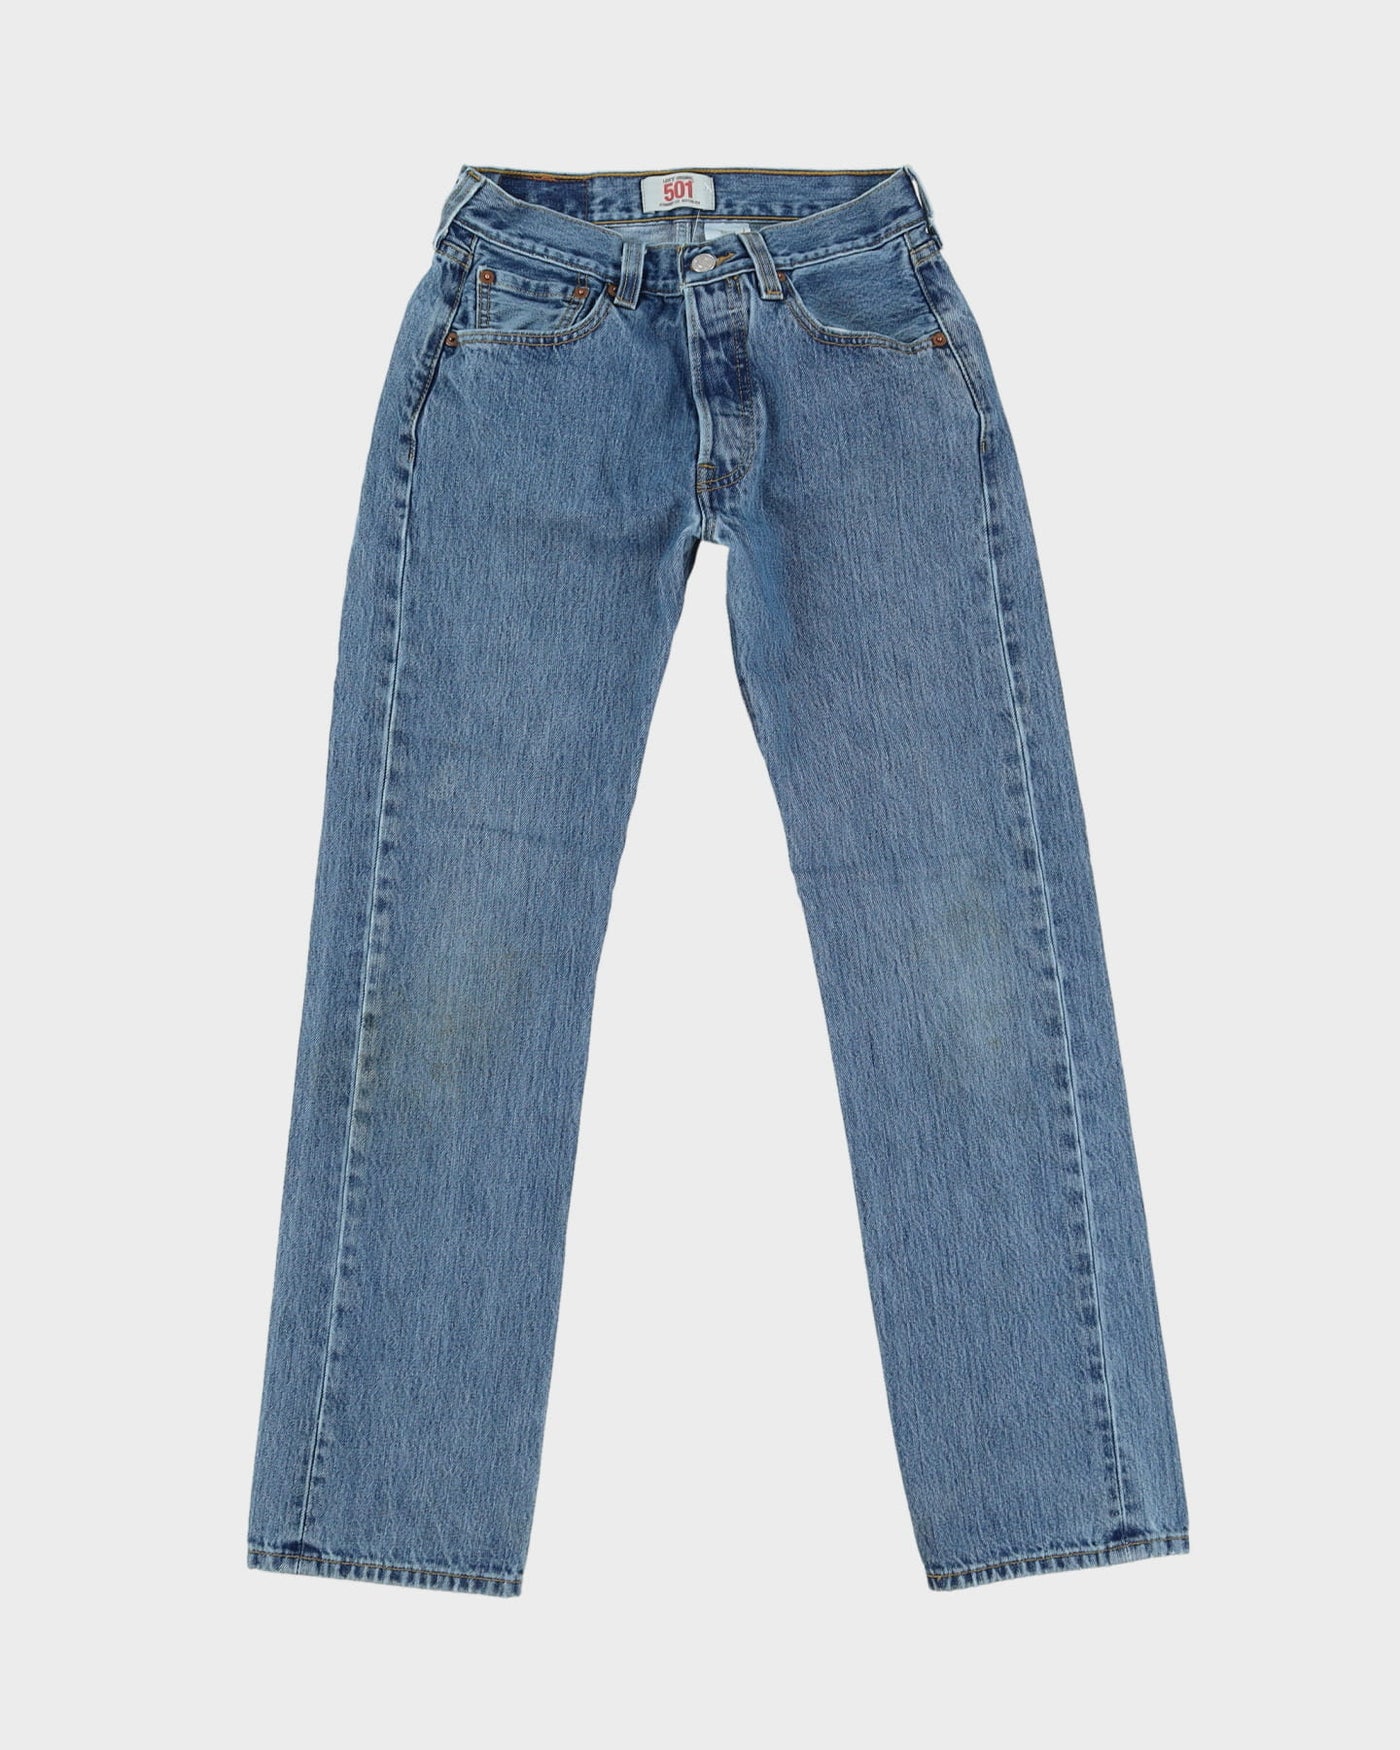 Vintage 90s Levi's 501 Blue Jeans - W27 L30